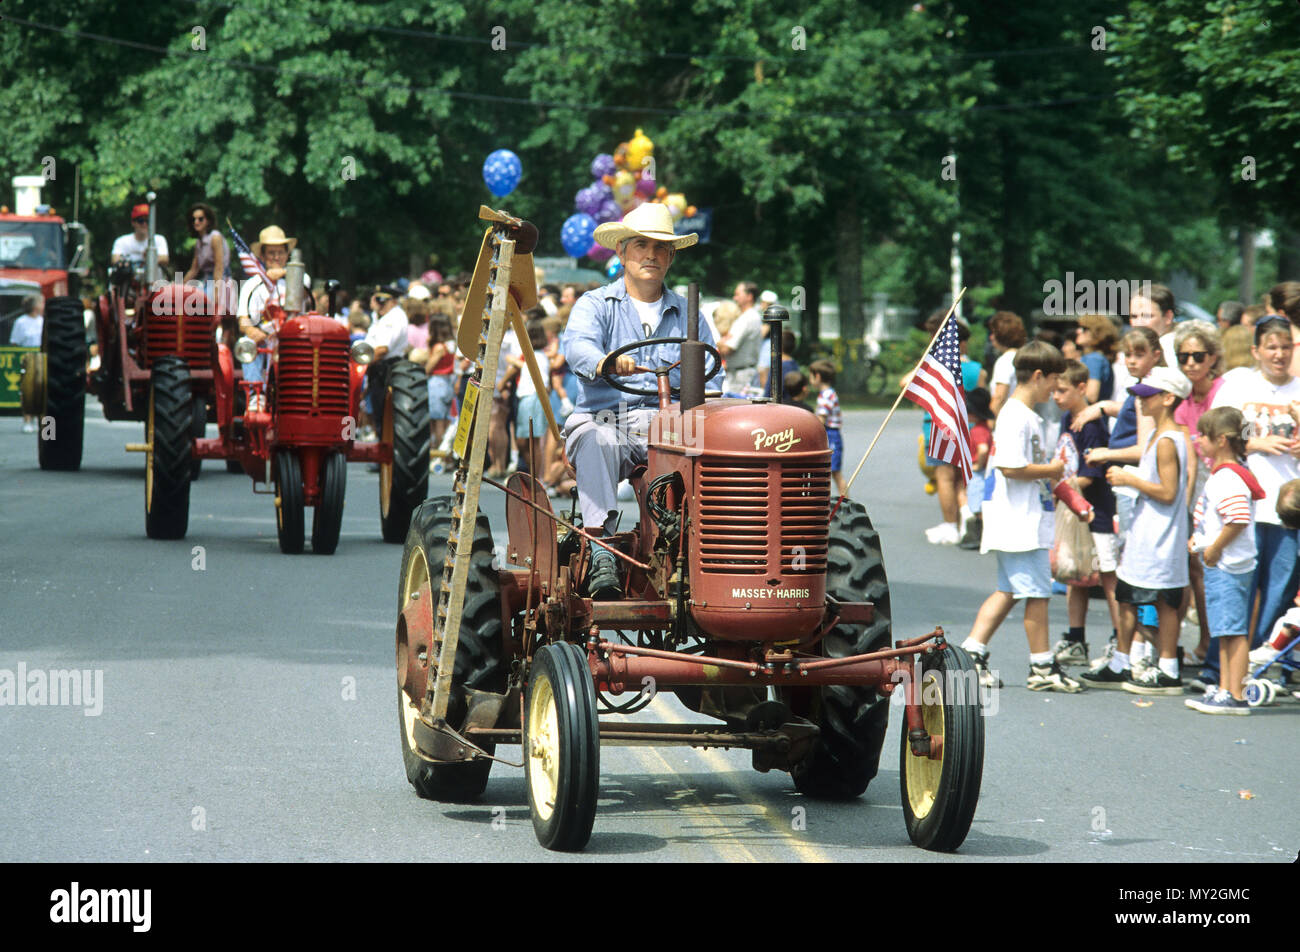 Las zonas rurales de Estados Unidos. Una pequeña ciudad 4 de julio desfile en Middleboro, Massachusetts, EE.UU. Foto de stock